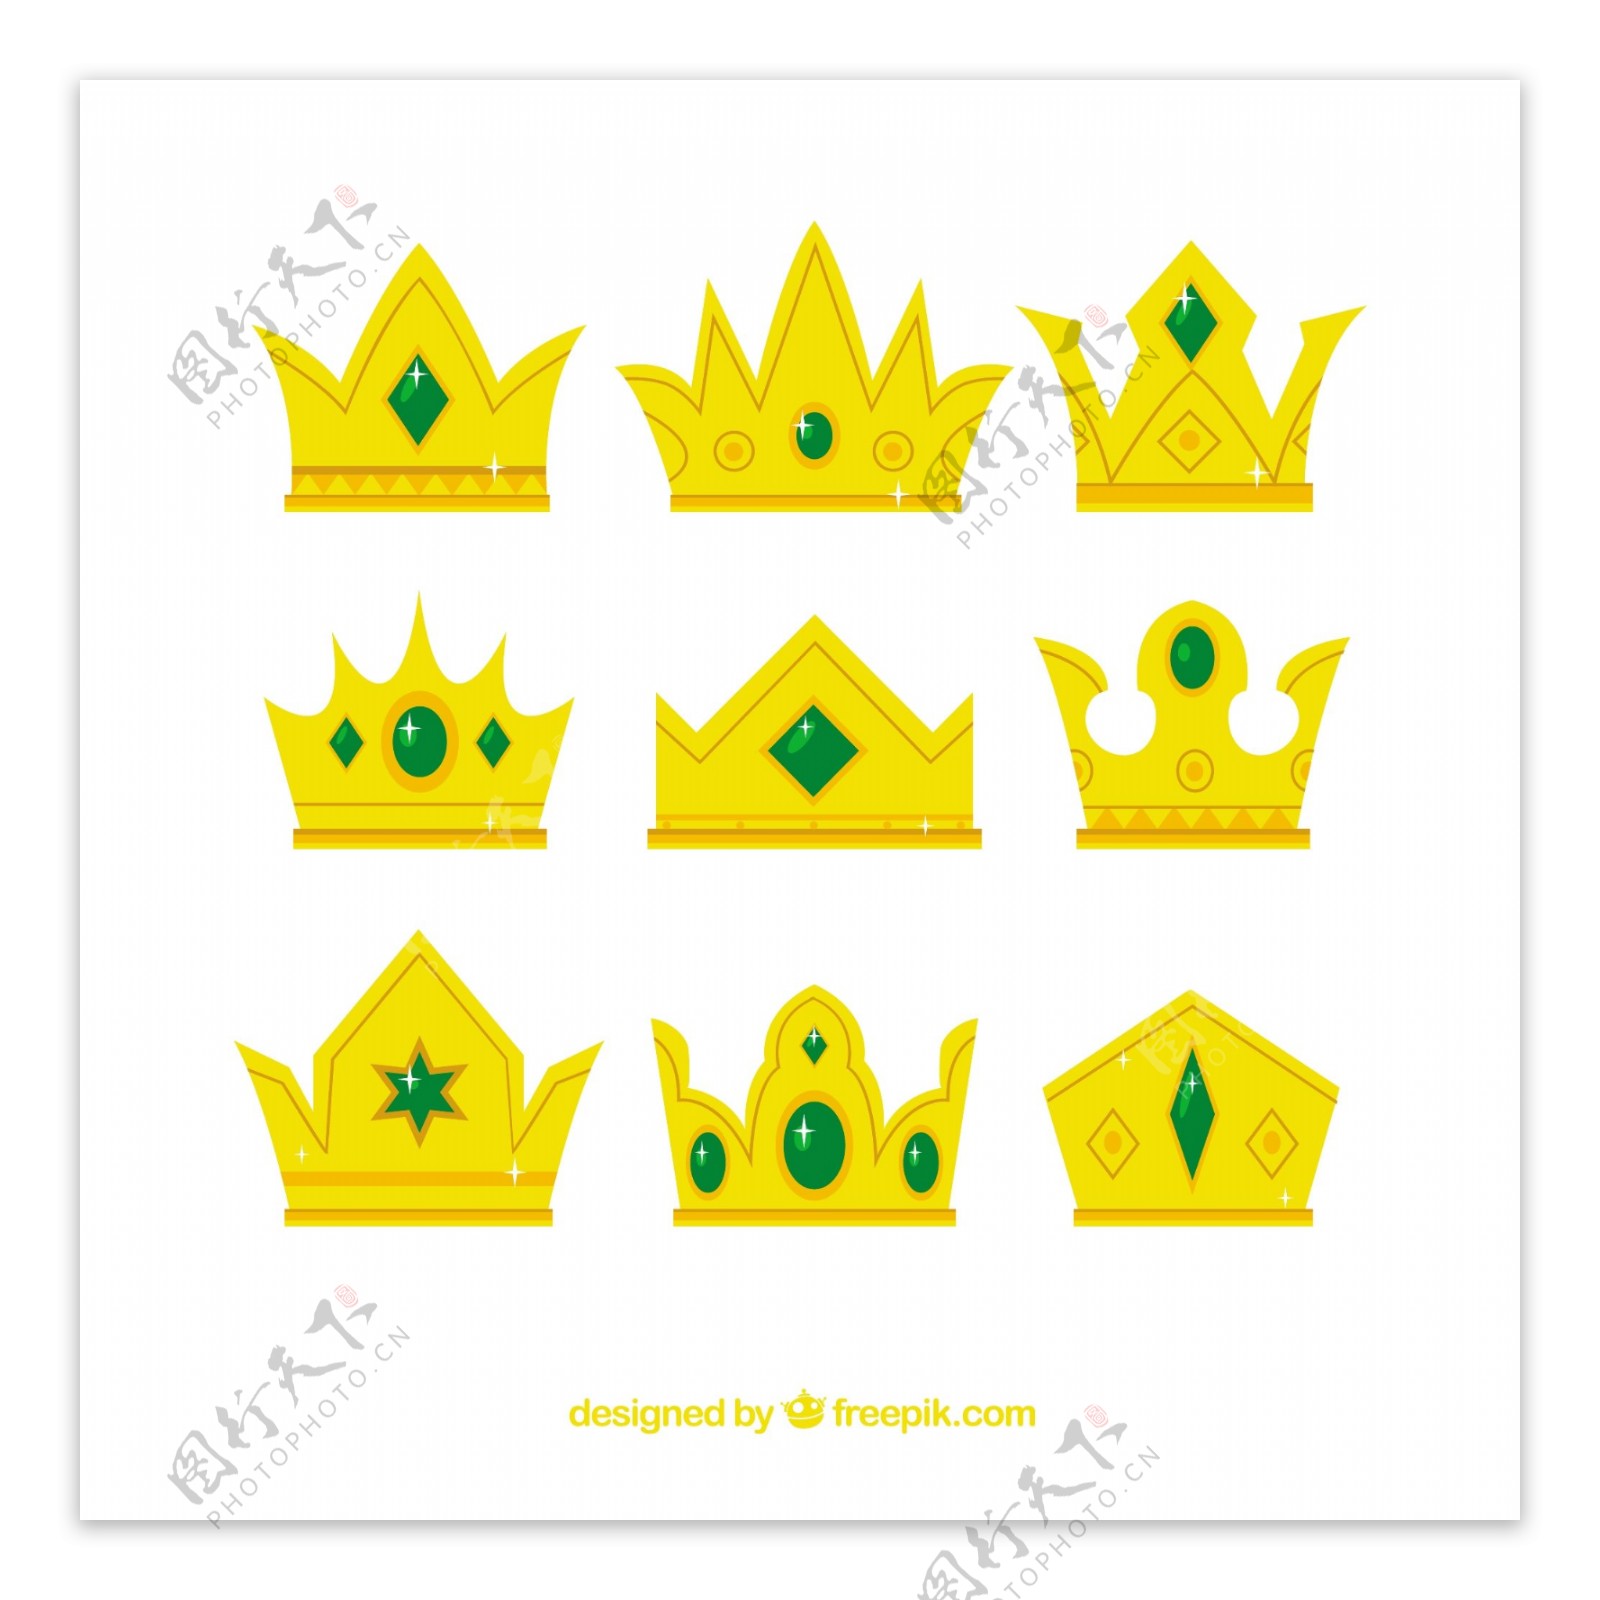 镶嵌绿色宝石的金色皇冠矢量设计素材